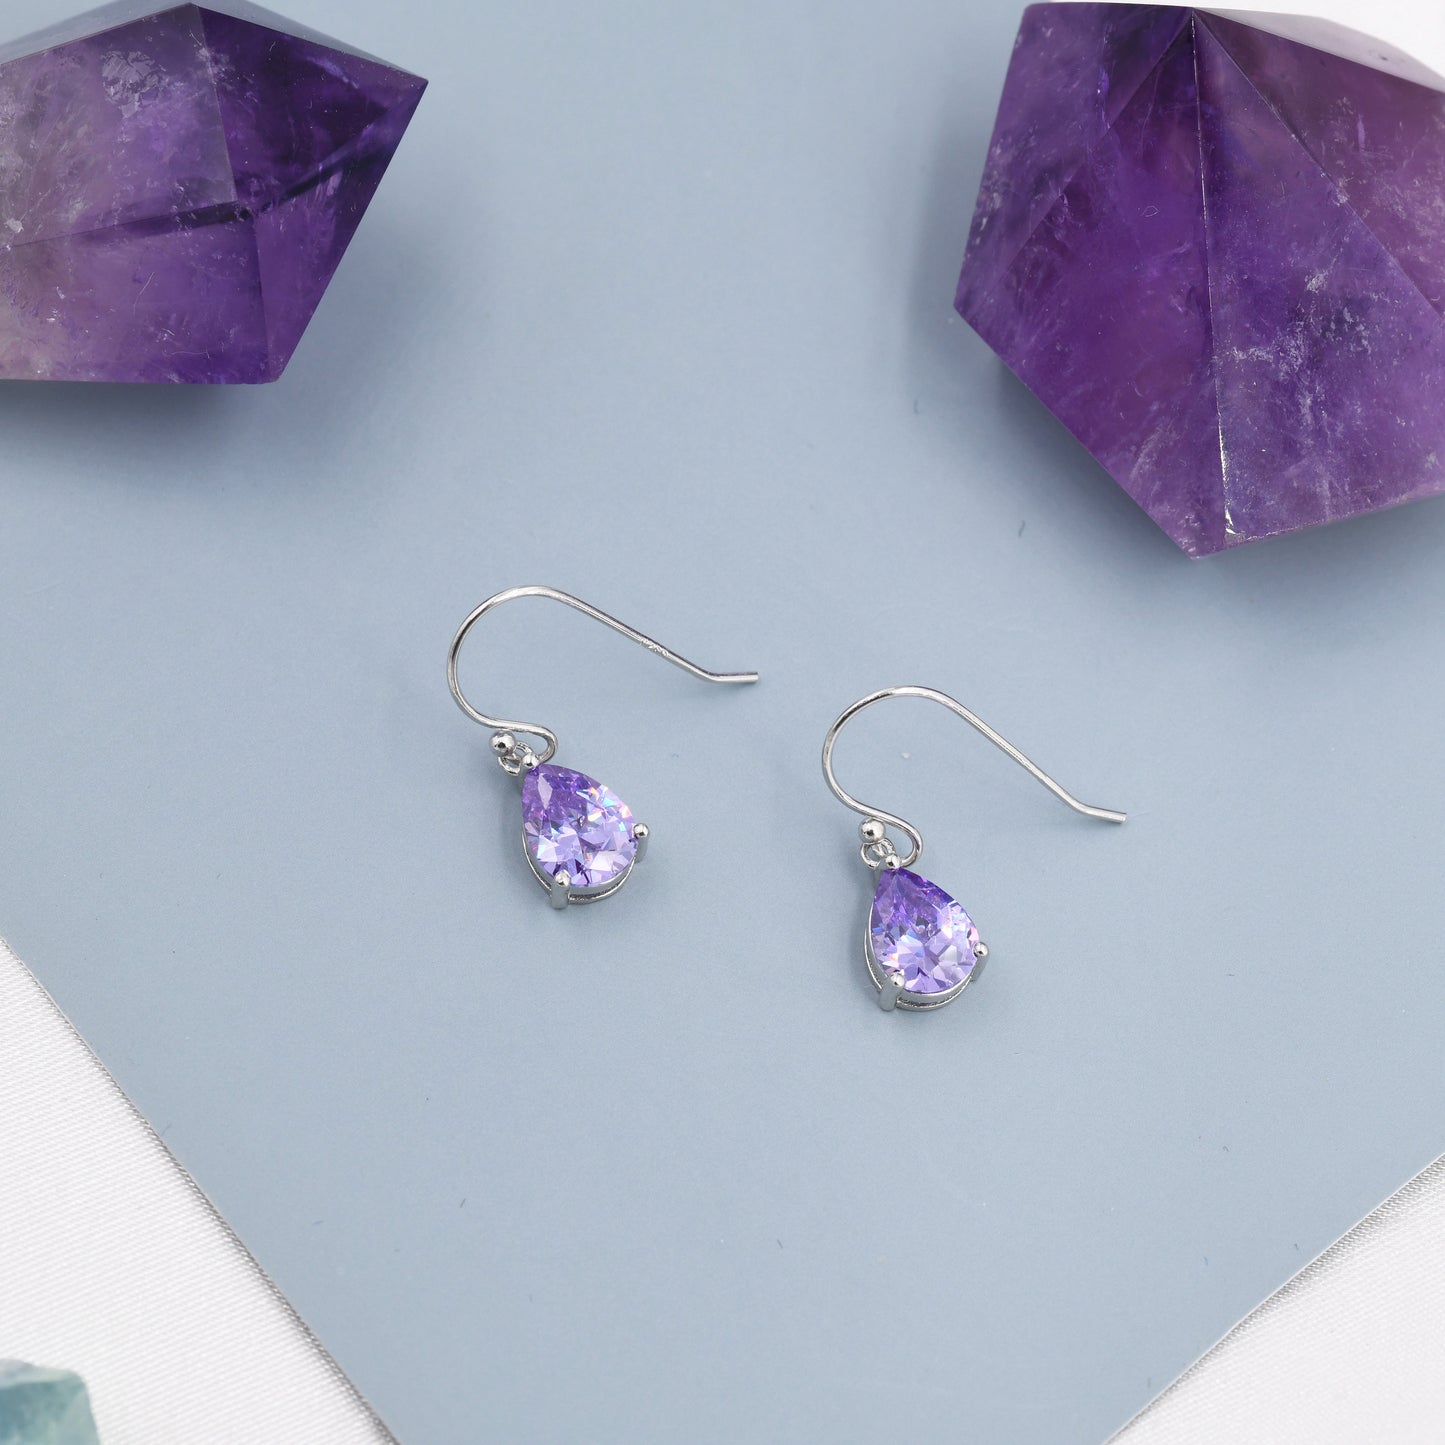 Amethyst Purple Pear Cut CZ Drop Earrings in Sterling Silver, Silver or Gold, Lilac Purple Droplet Dangle Earrings